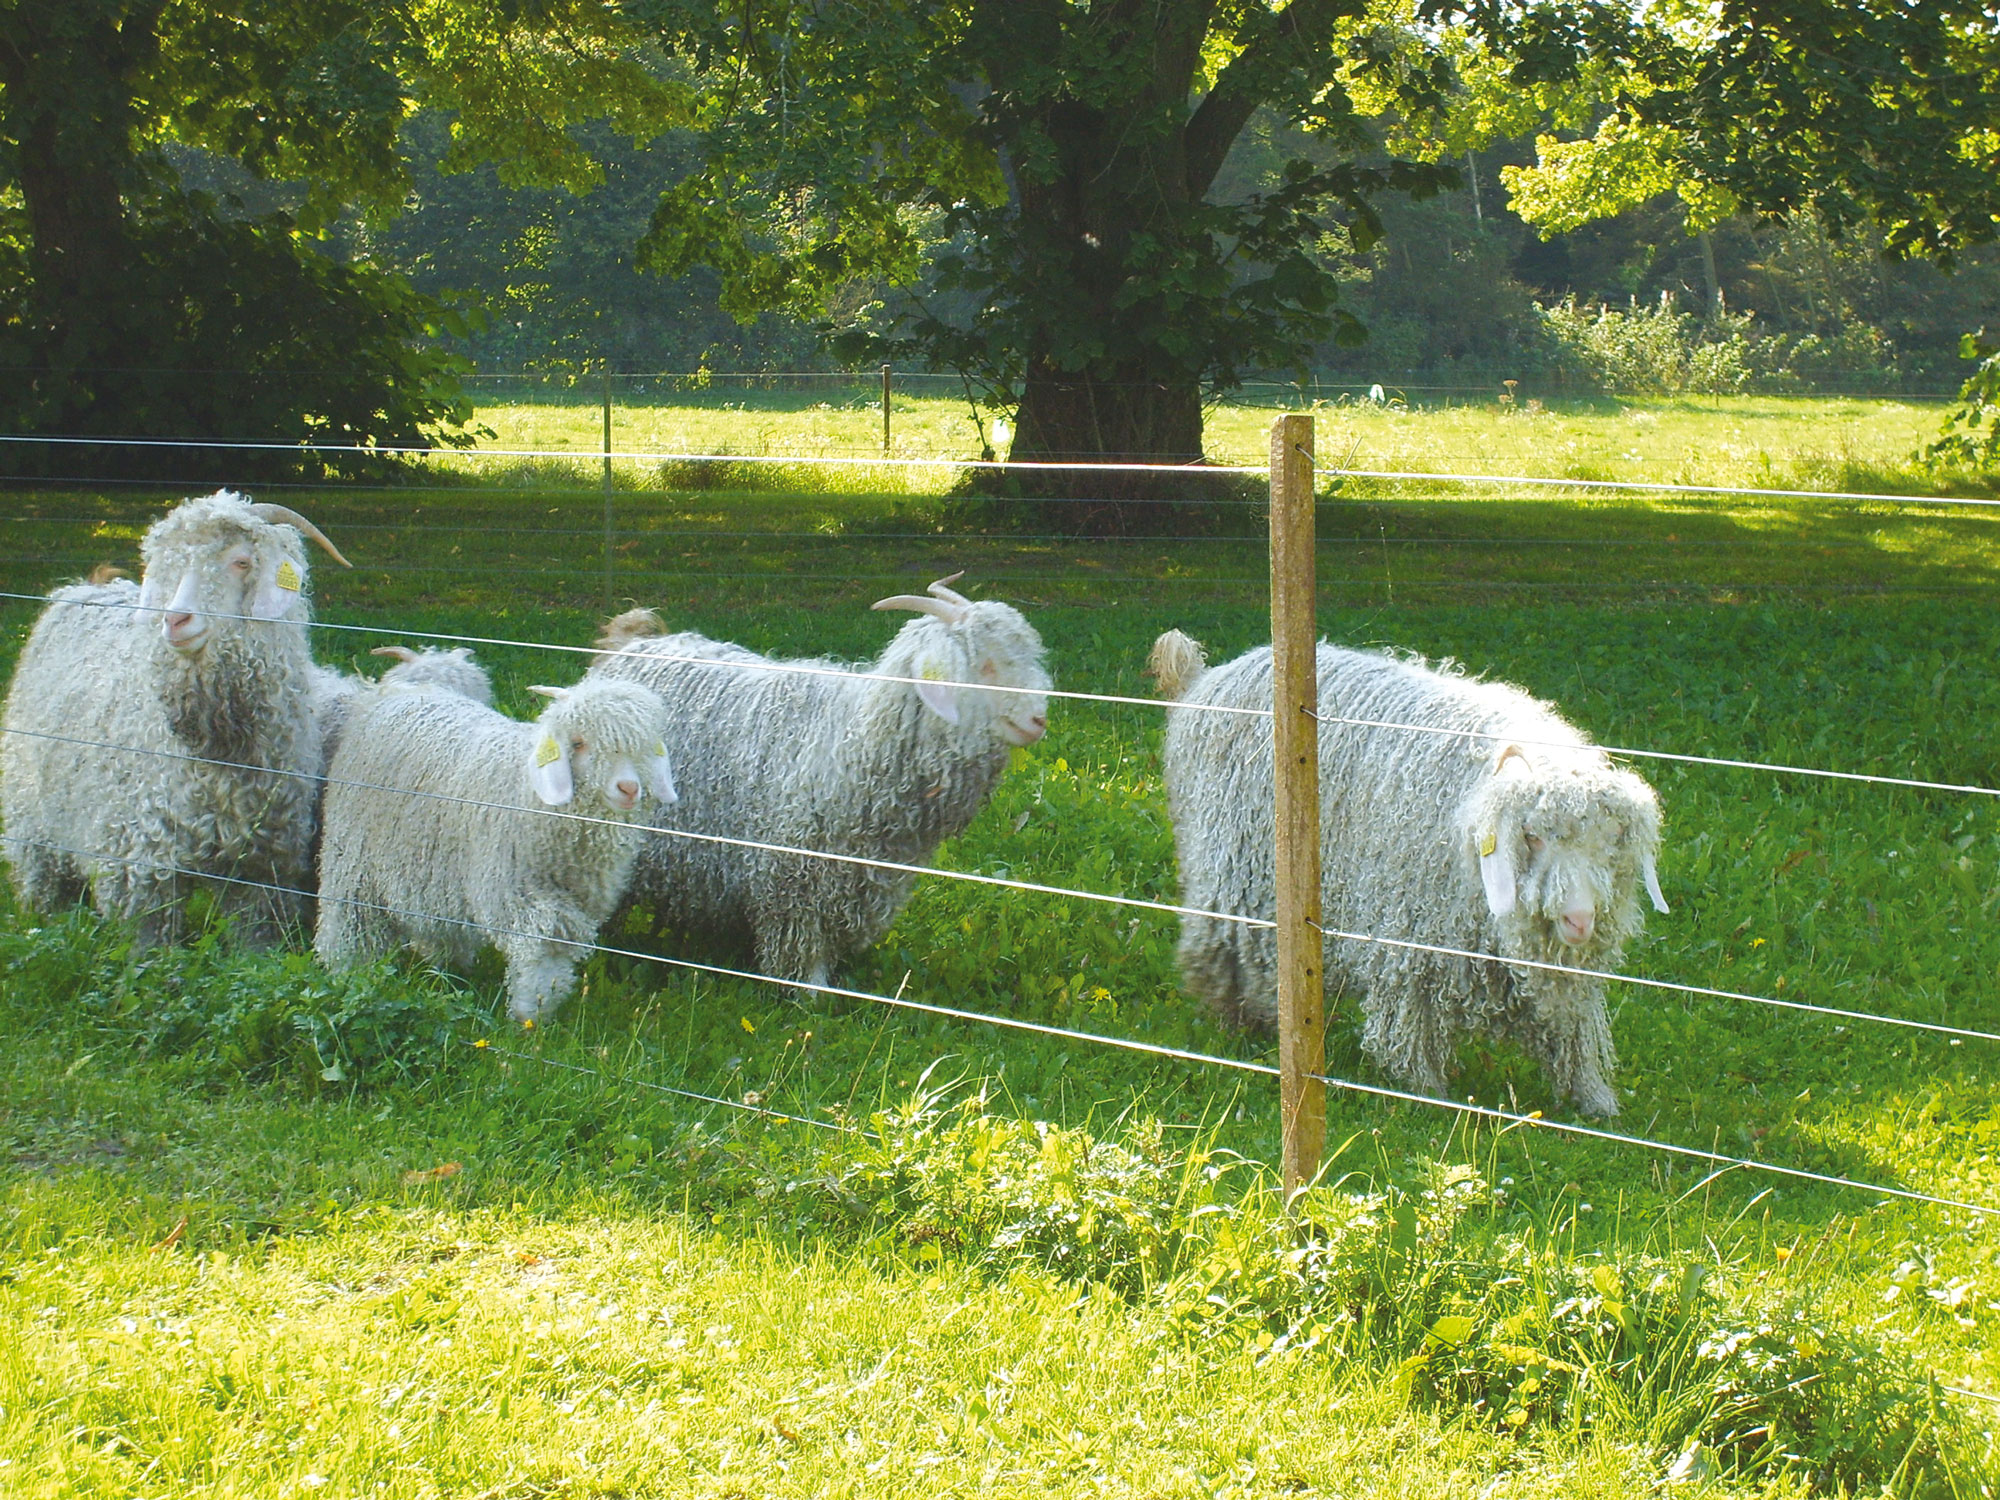 Fünf langhaarige Schafe grasen hinter einem Elektrozaun.